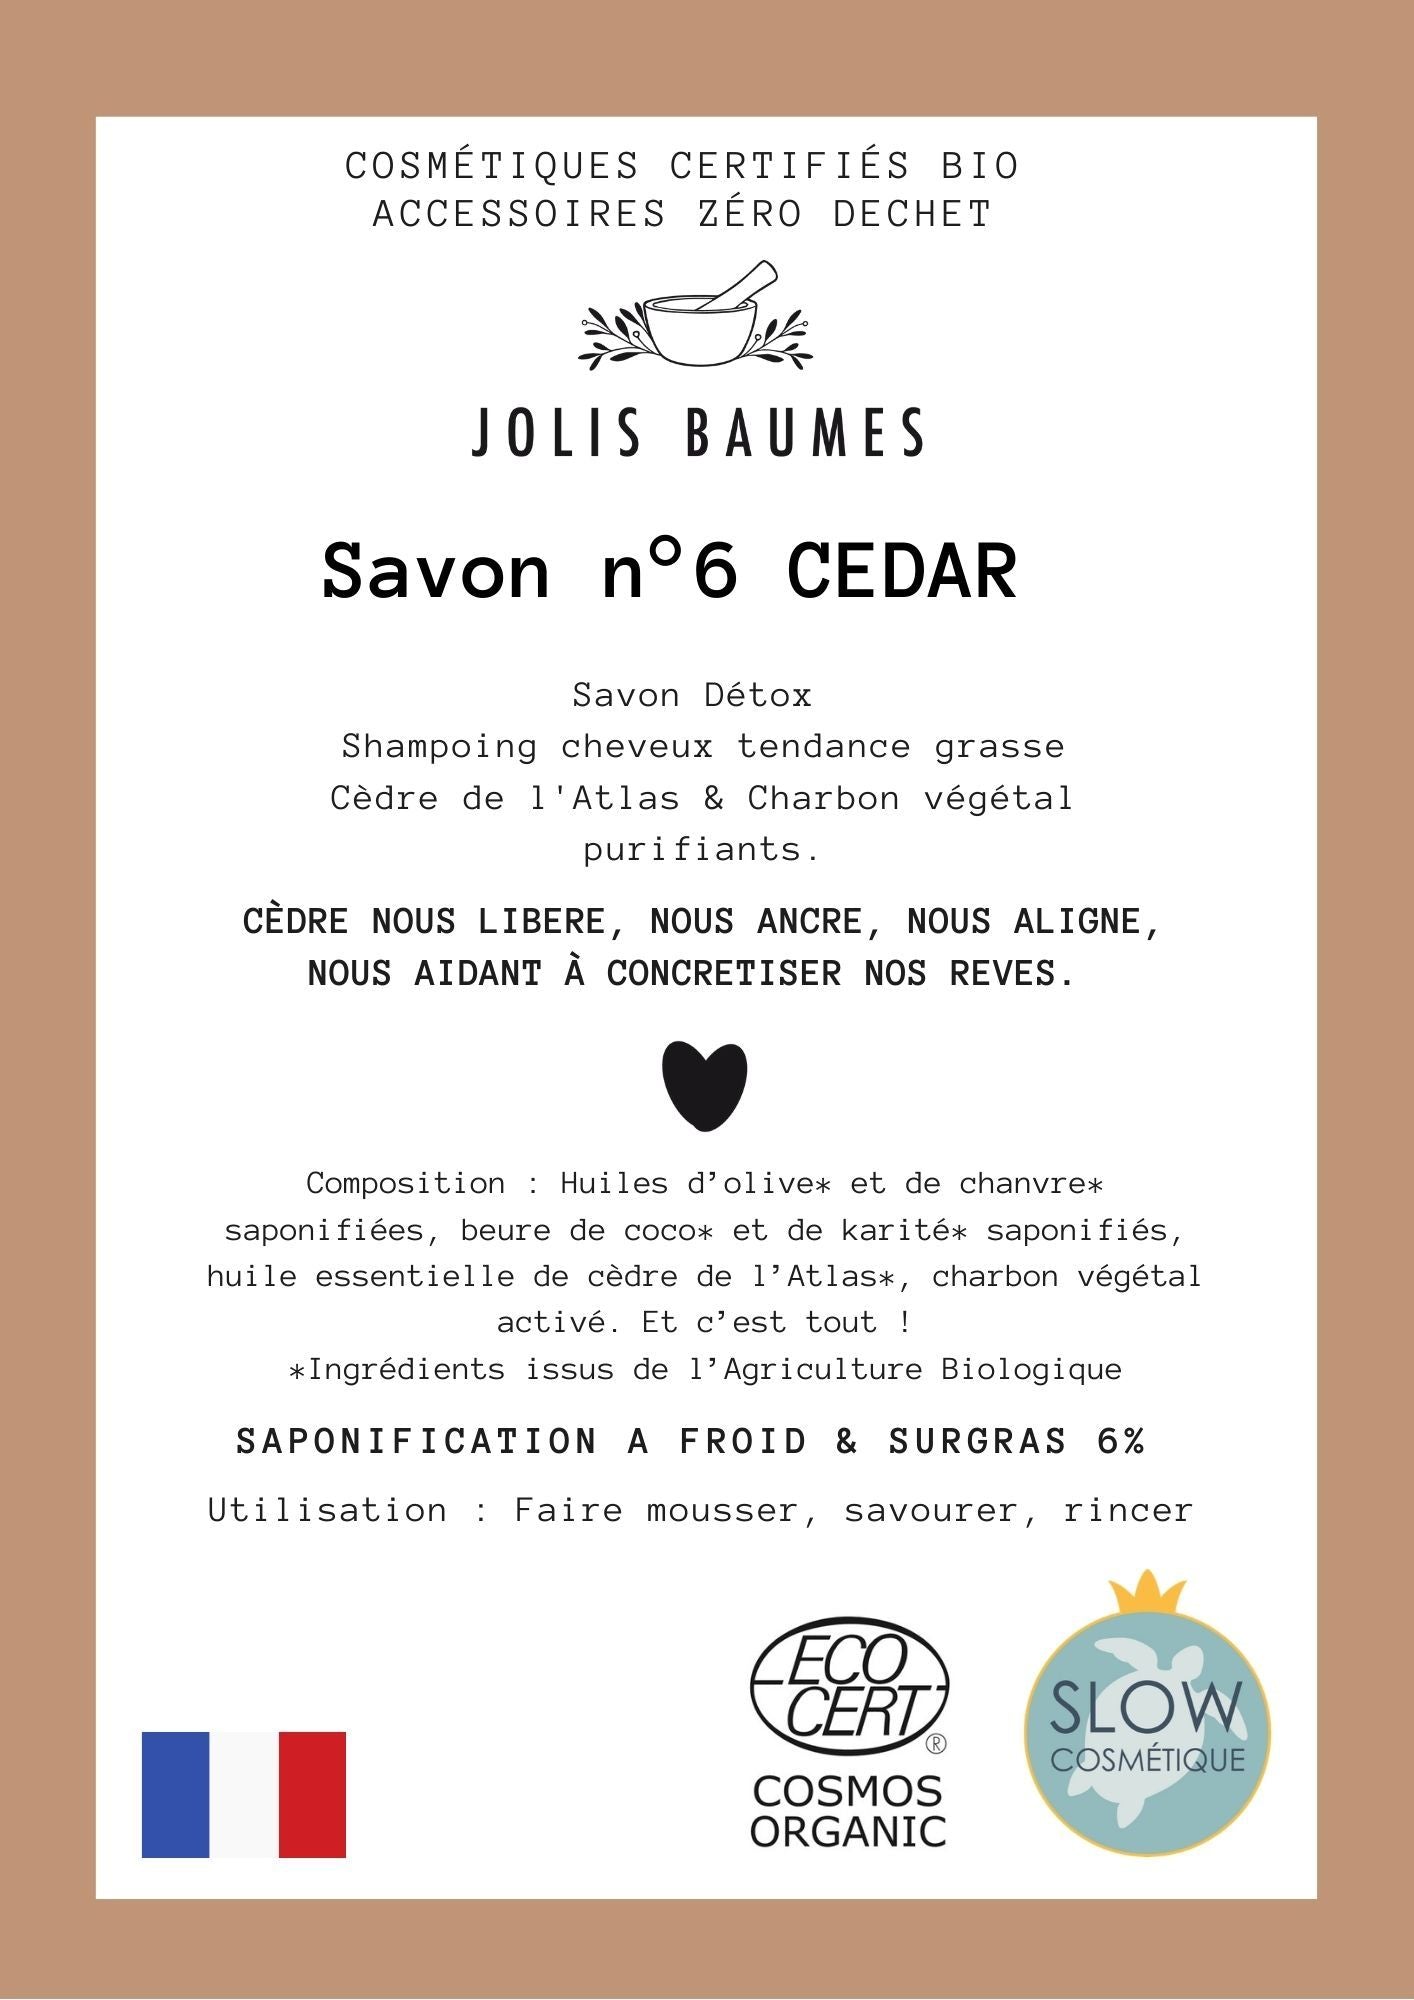 Jolis Baumes -- Savon purifiant & shampoing cheveux gras/pellicules (n°6 cedar bio) - 100 g